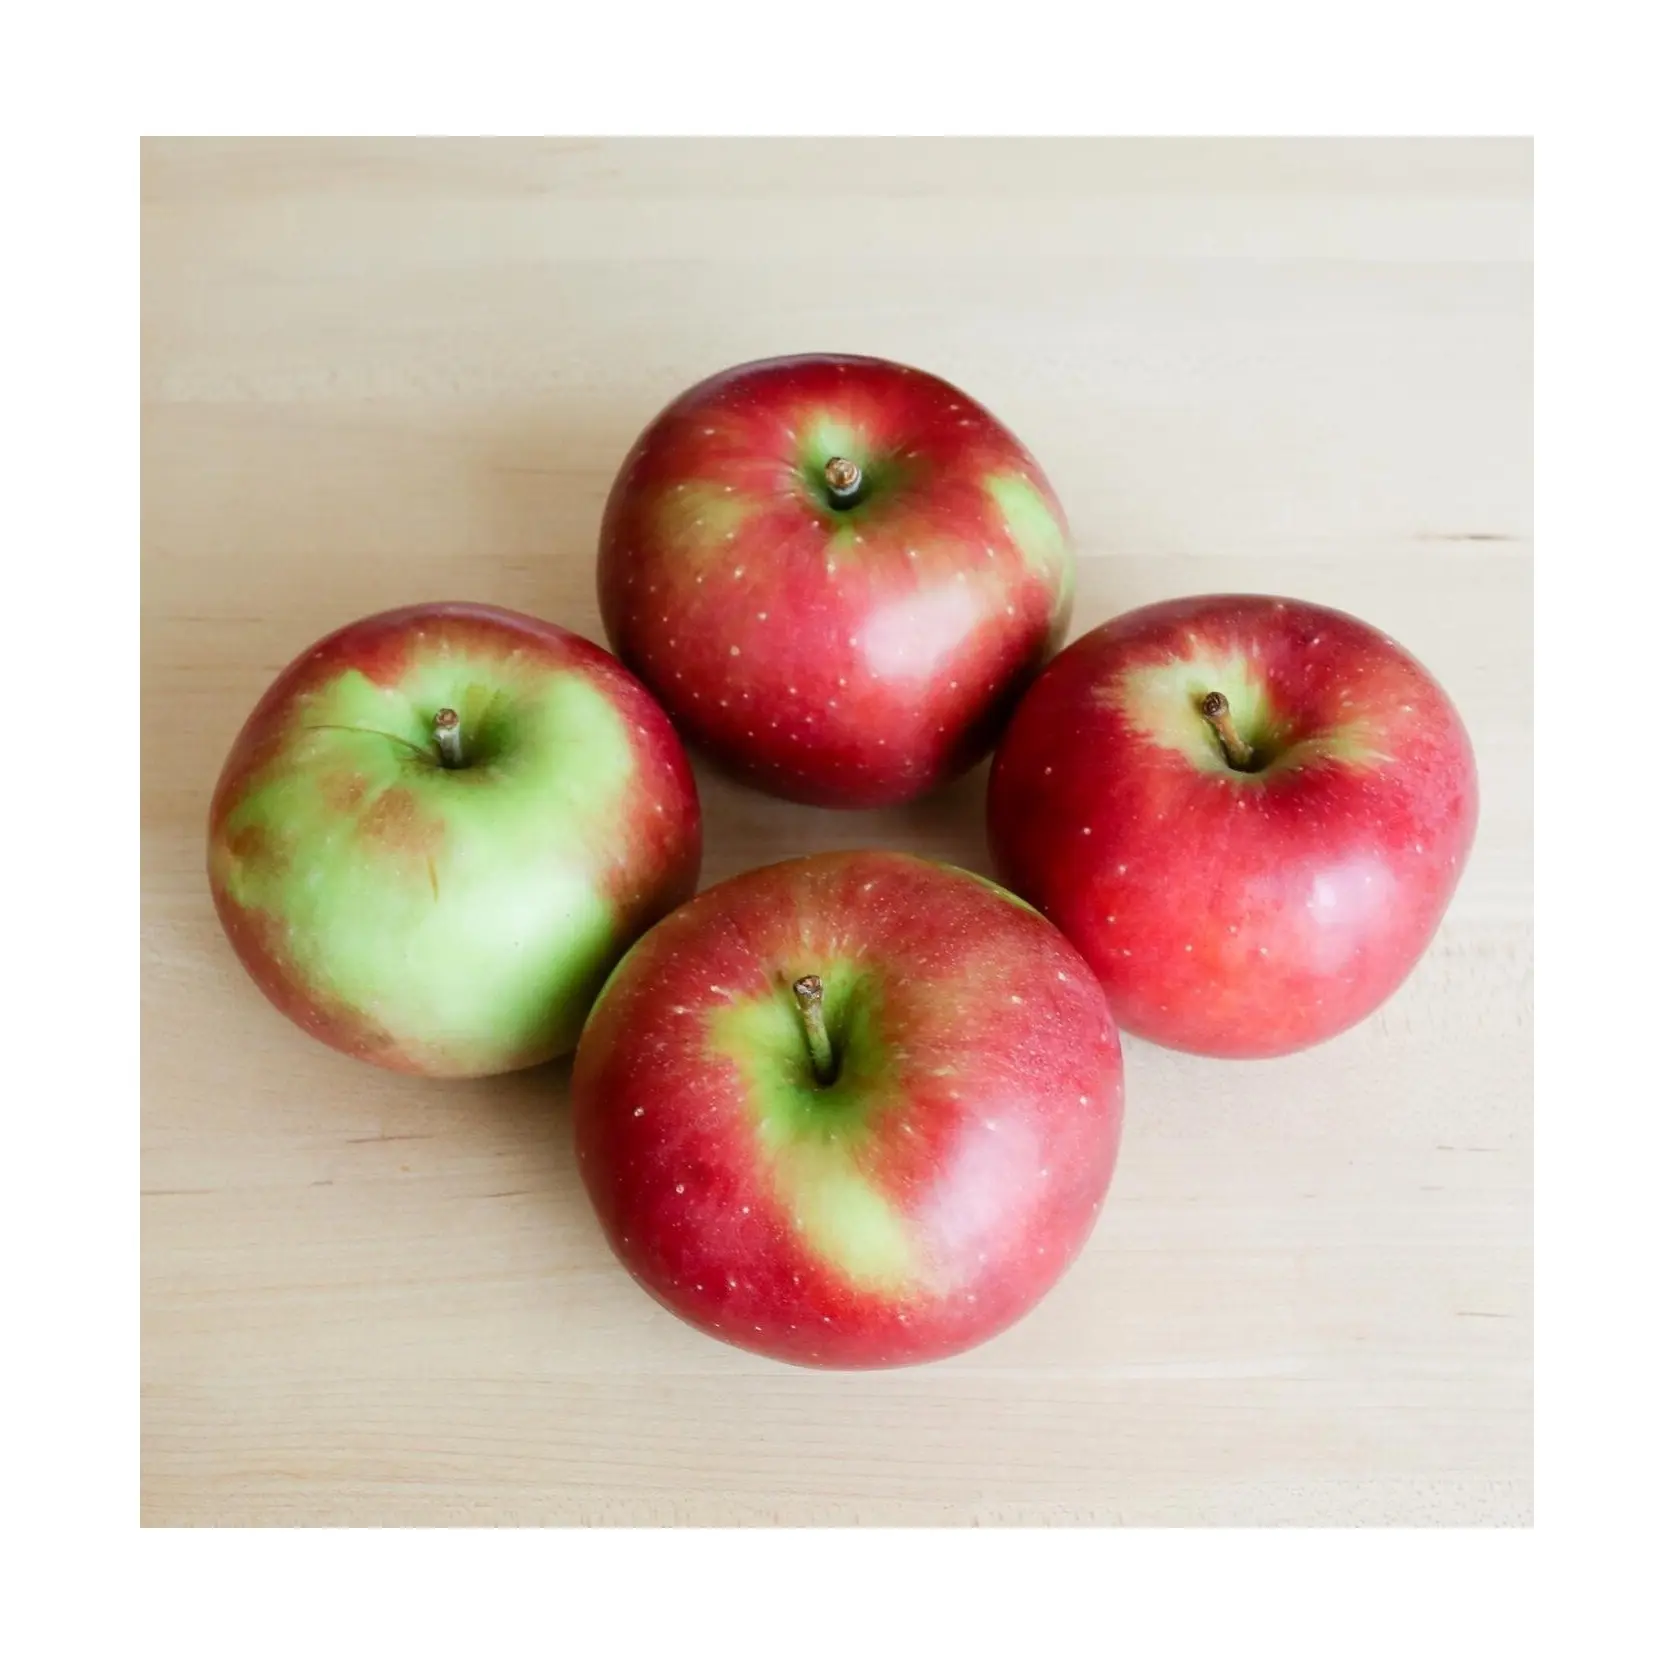 Le mele fresche Winesap acquistano Online il produttore di offerte all'ingrosso frutta fresca sfusa di mele